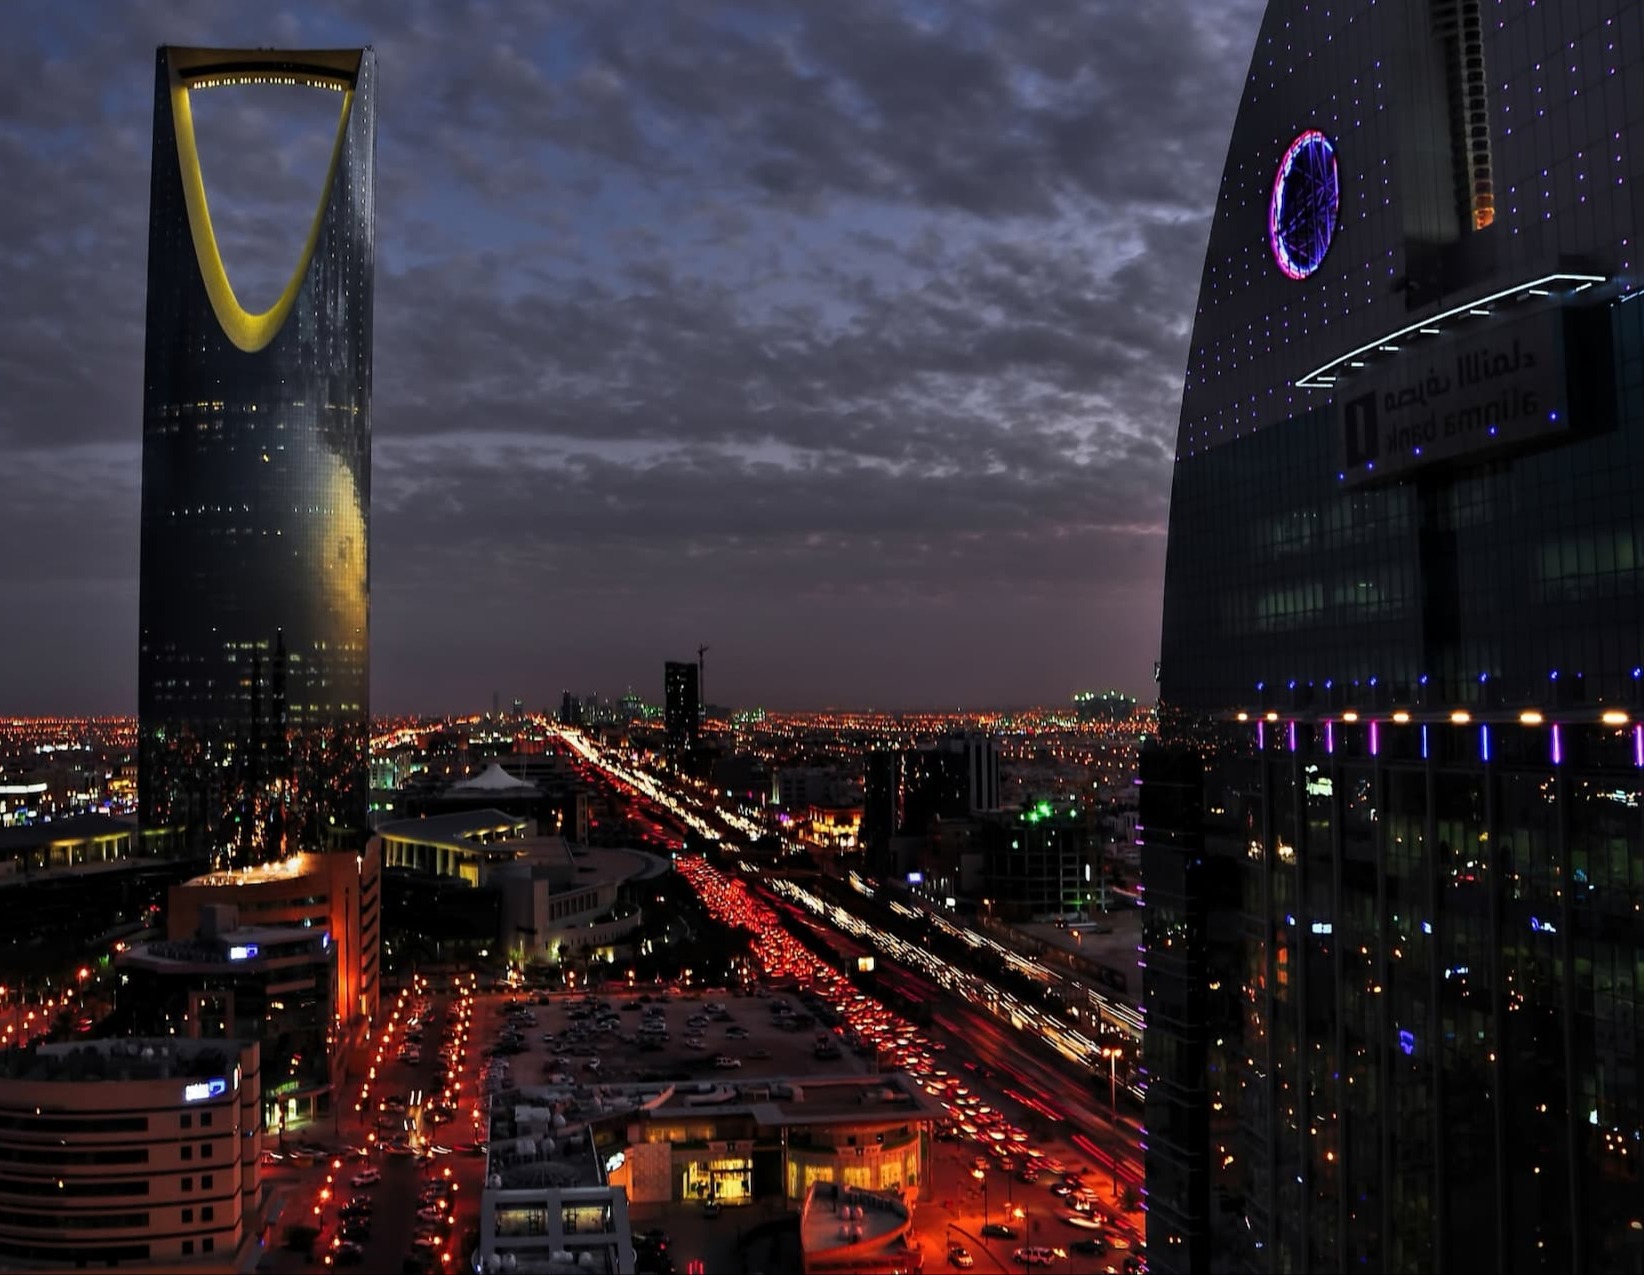 IC Hotel Riyadh